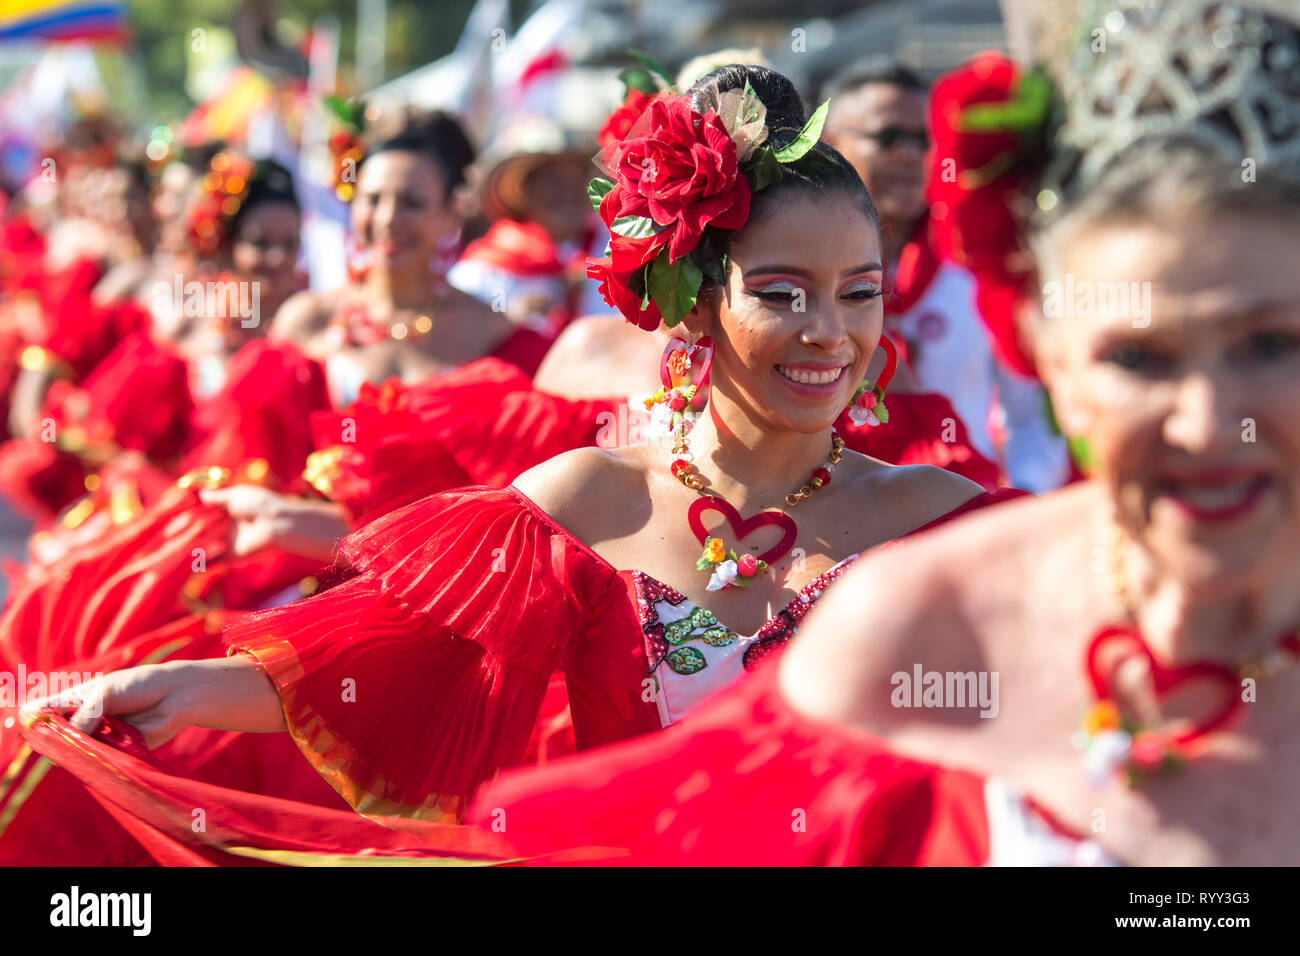 Dimanche carnaval célèbre la Grande Parade de la tradition et du folklore, une parade que seuls des groupes folkloriques traditionnels, cumbiambas et comparsas perfo Banque D'Images